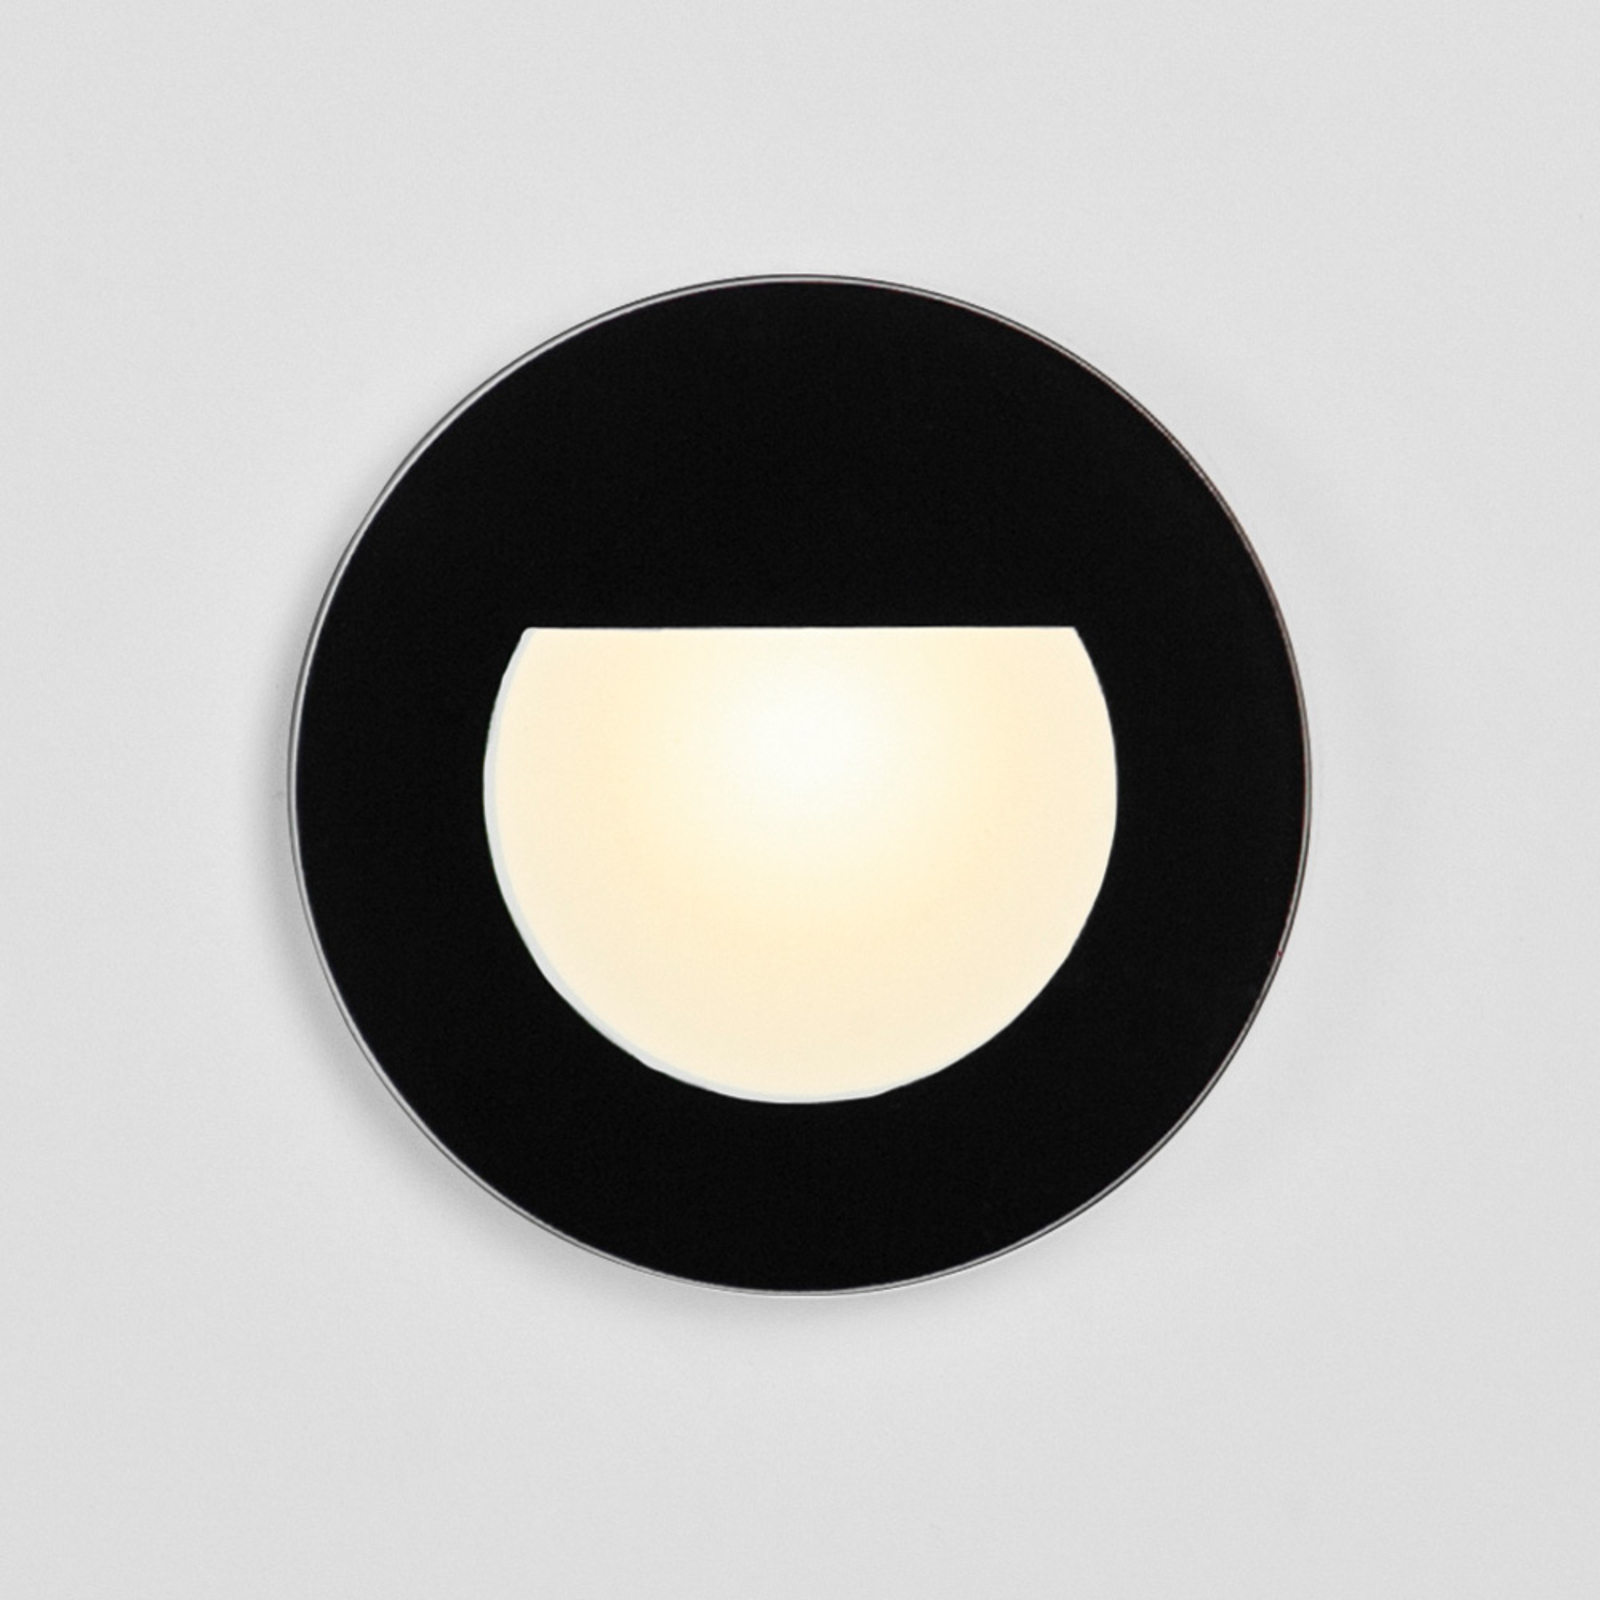 BRUMBERG Wall Kit68 Einbaulampe flach rund schwarz